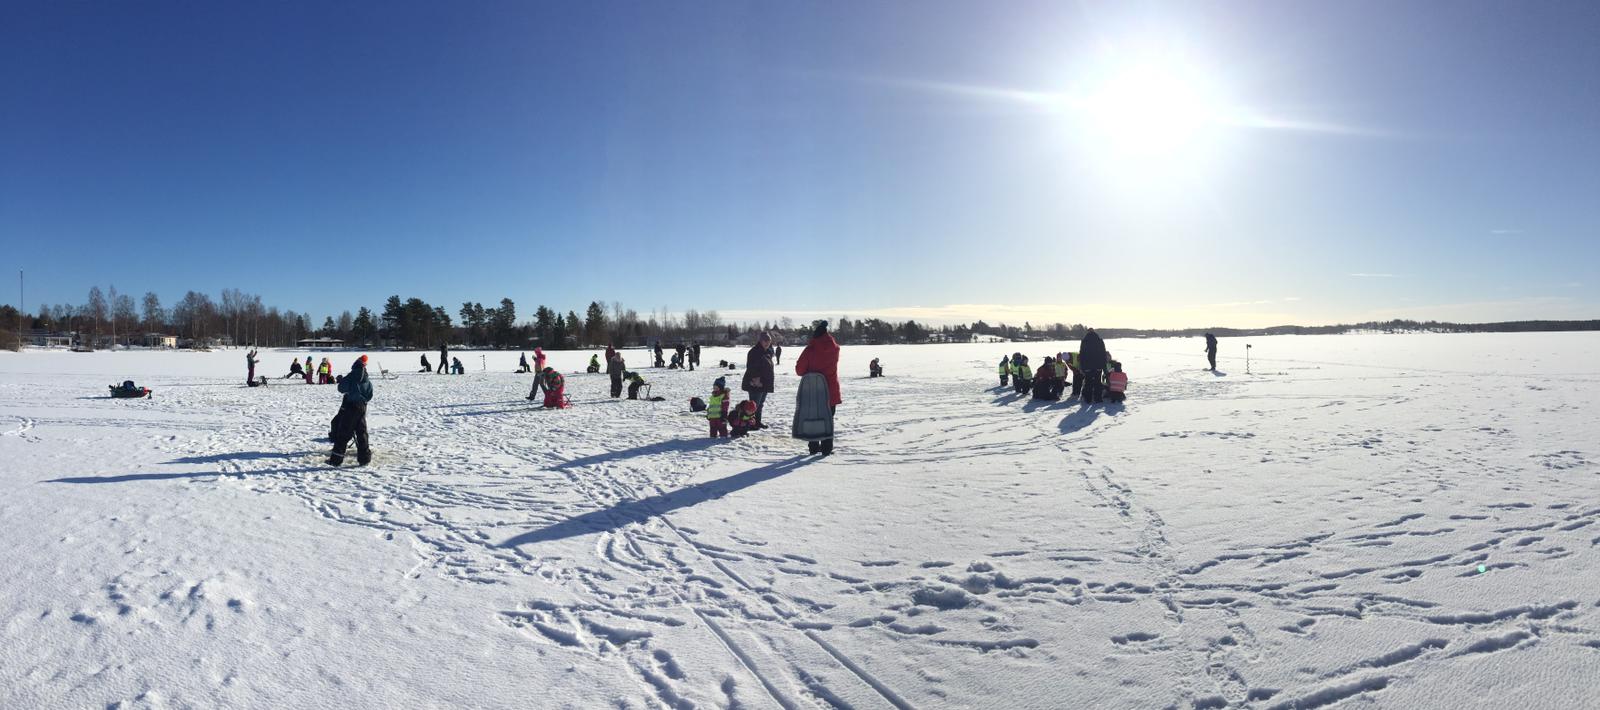 Foto: frusen sjö med snö och lekande barn. 